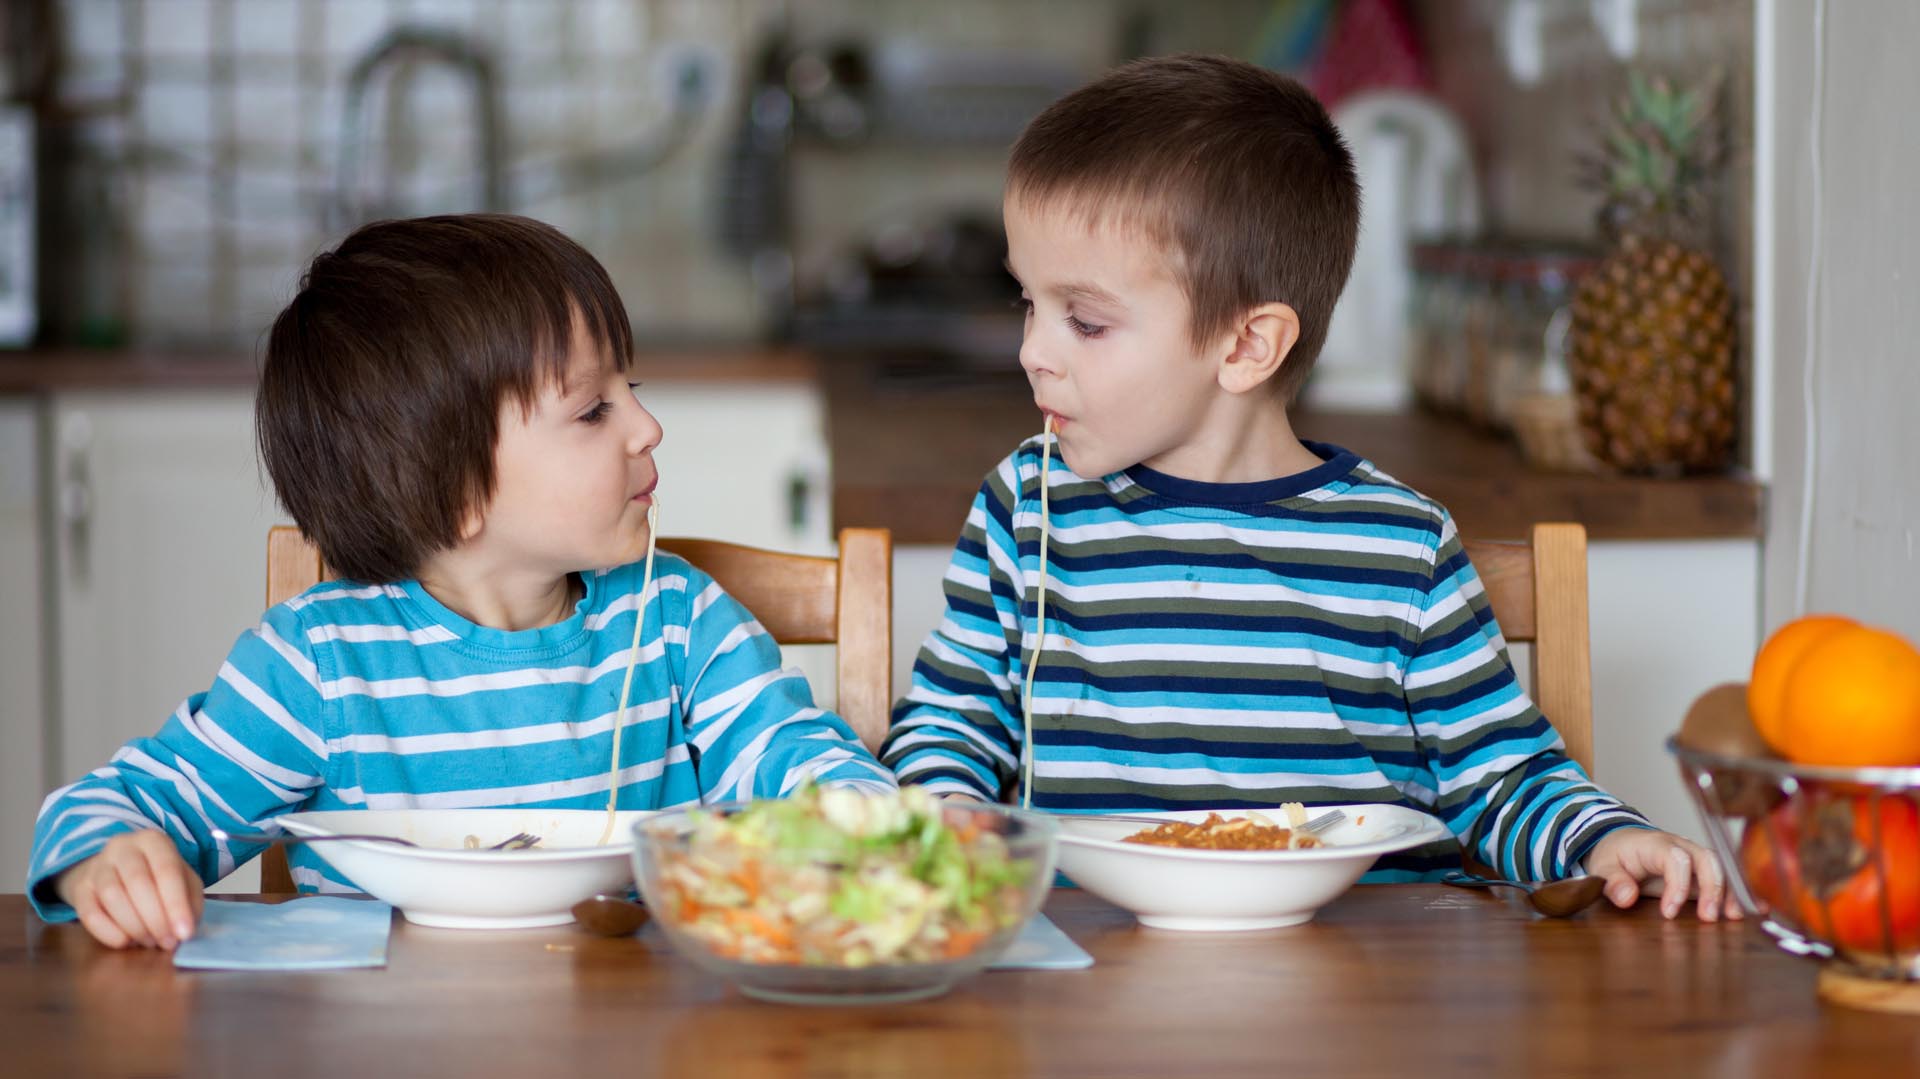 En qué se diferencia la alimentación de un niño obeso con la de uno “saludable”, según la ciencia